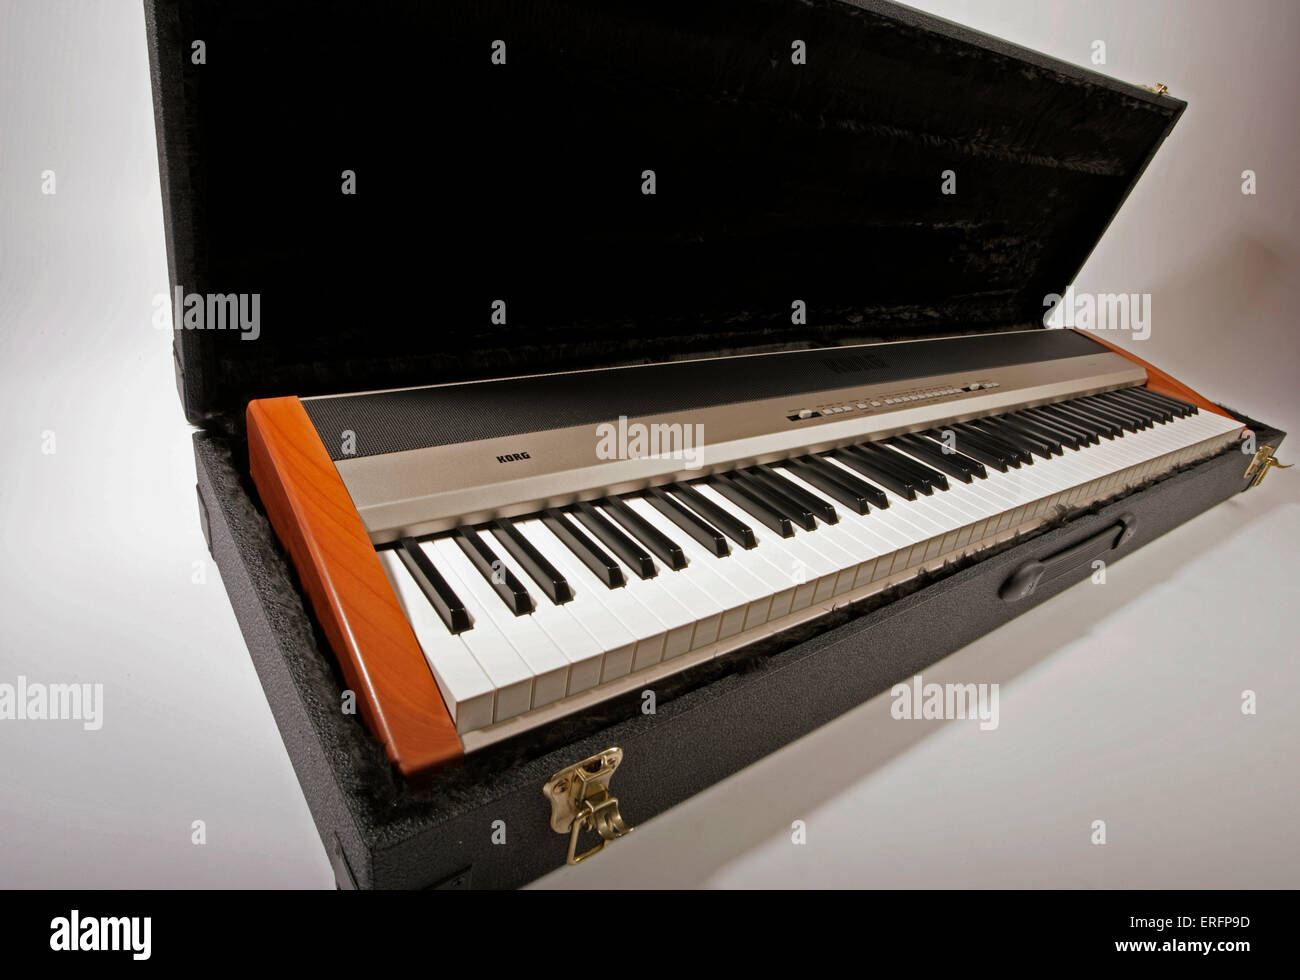 Korg keyboard in a flight case Stock Photo - Alamy